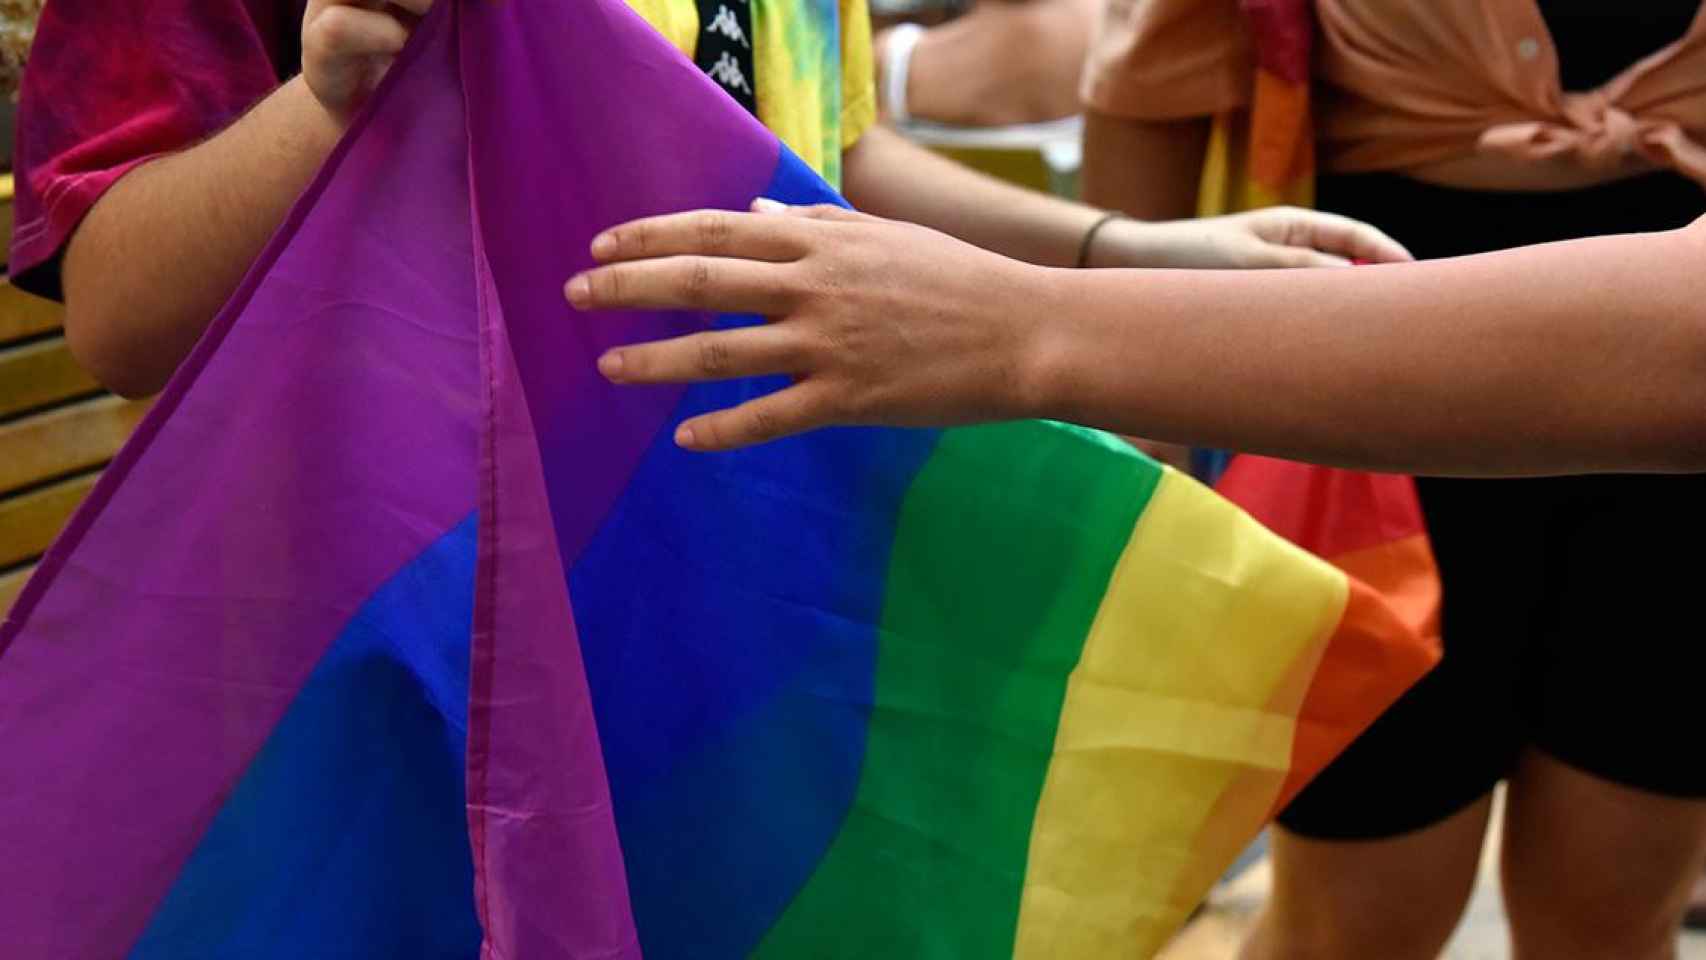 Los Mossos d'Esquadra denuncian a dos menores por insultar y amenazar a un profesor por su condición de homosexual / EP